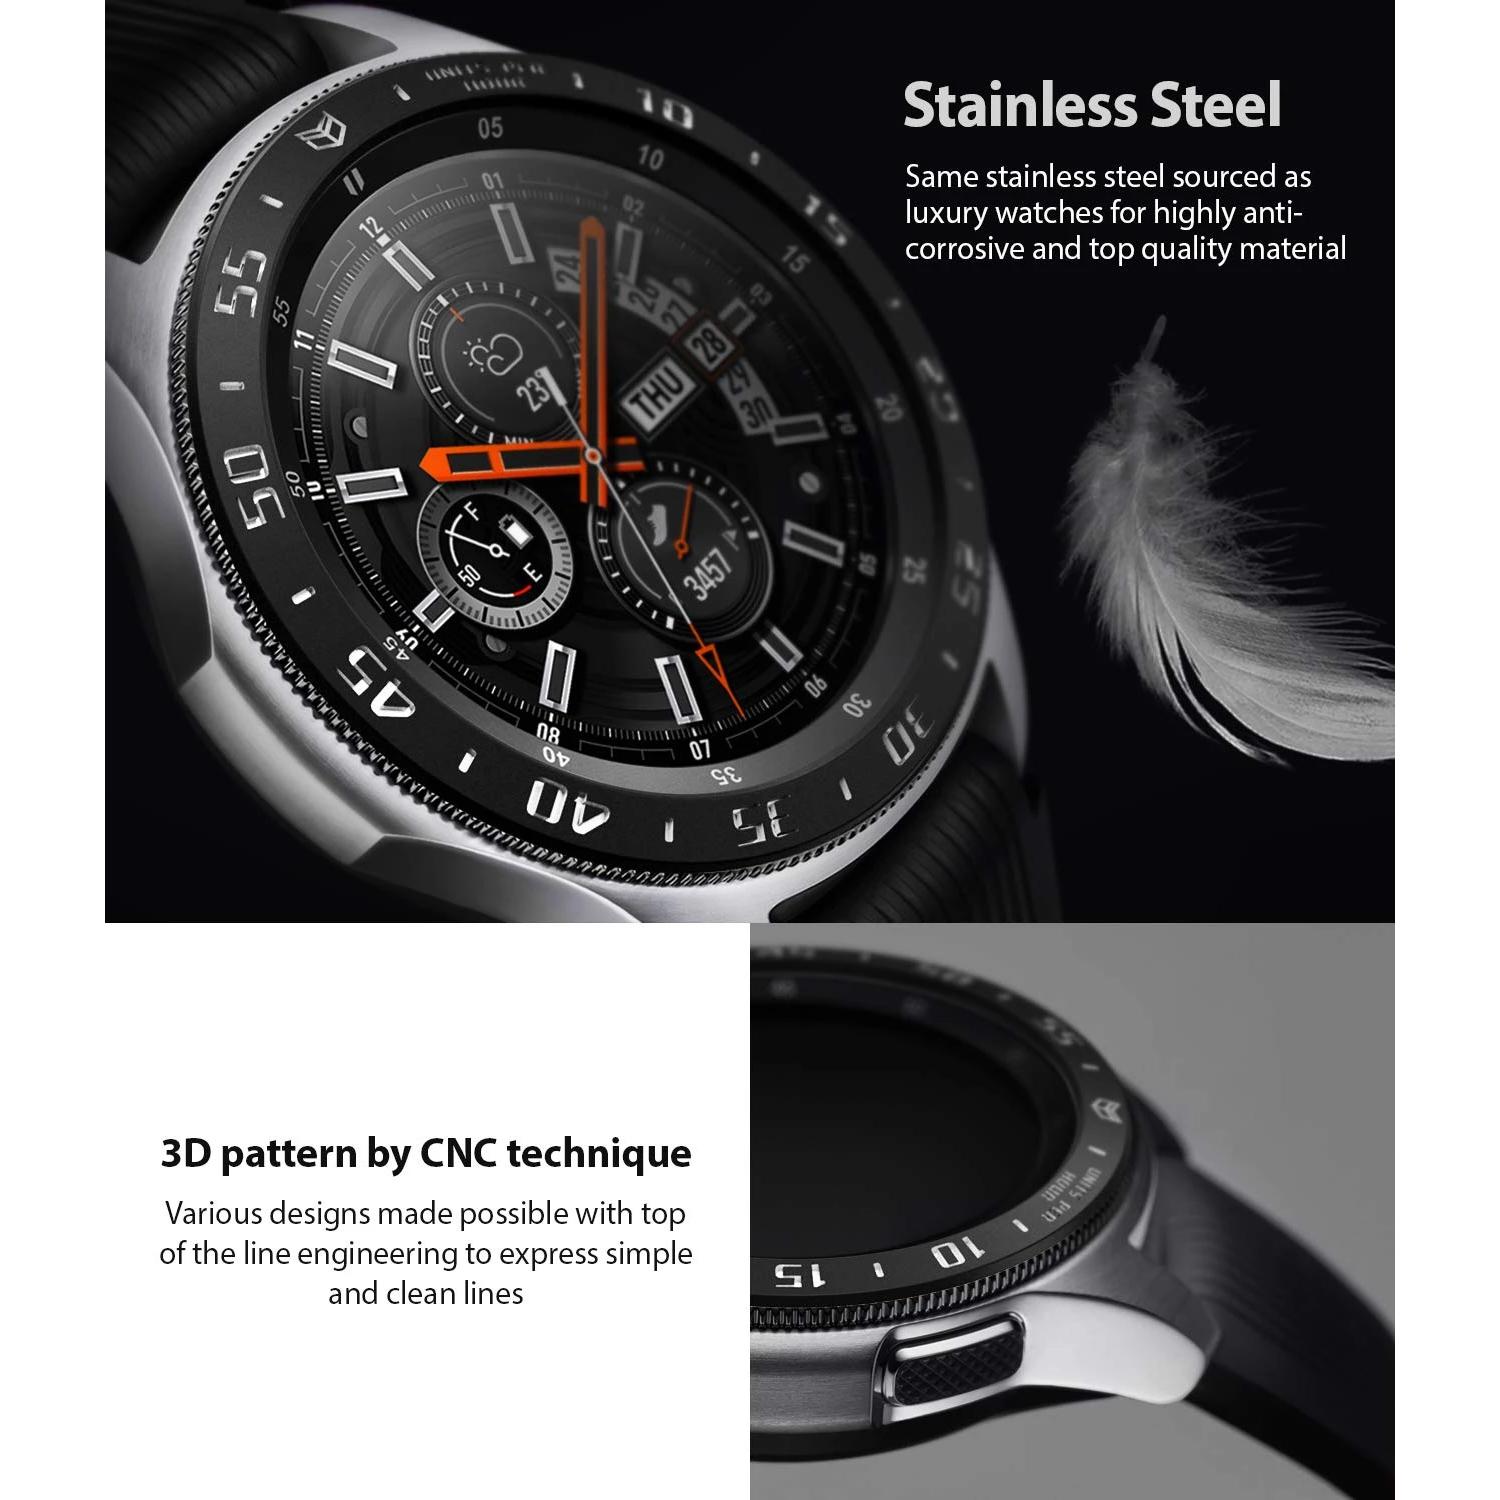 Bezel Styling Galaxy Watch 46mm/Gear S3 Black